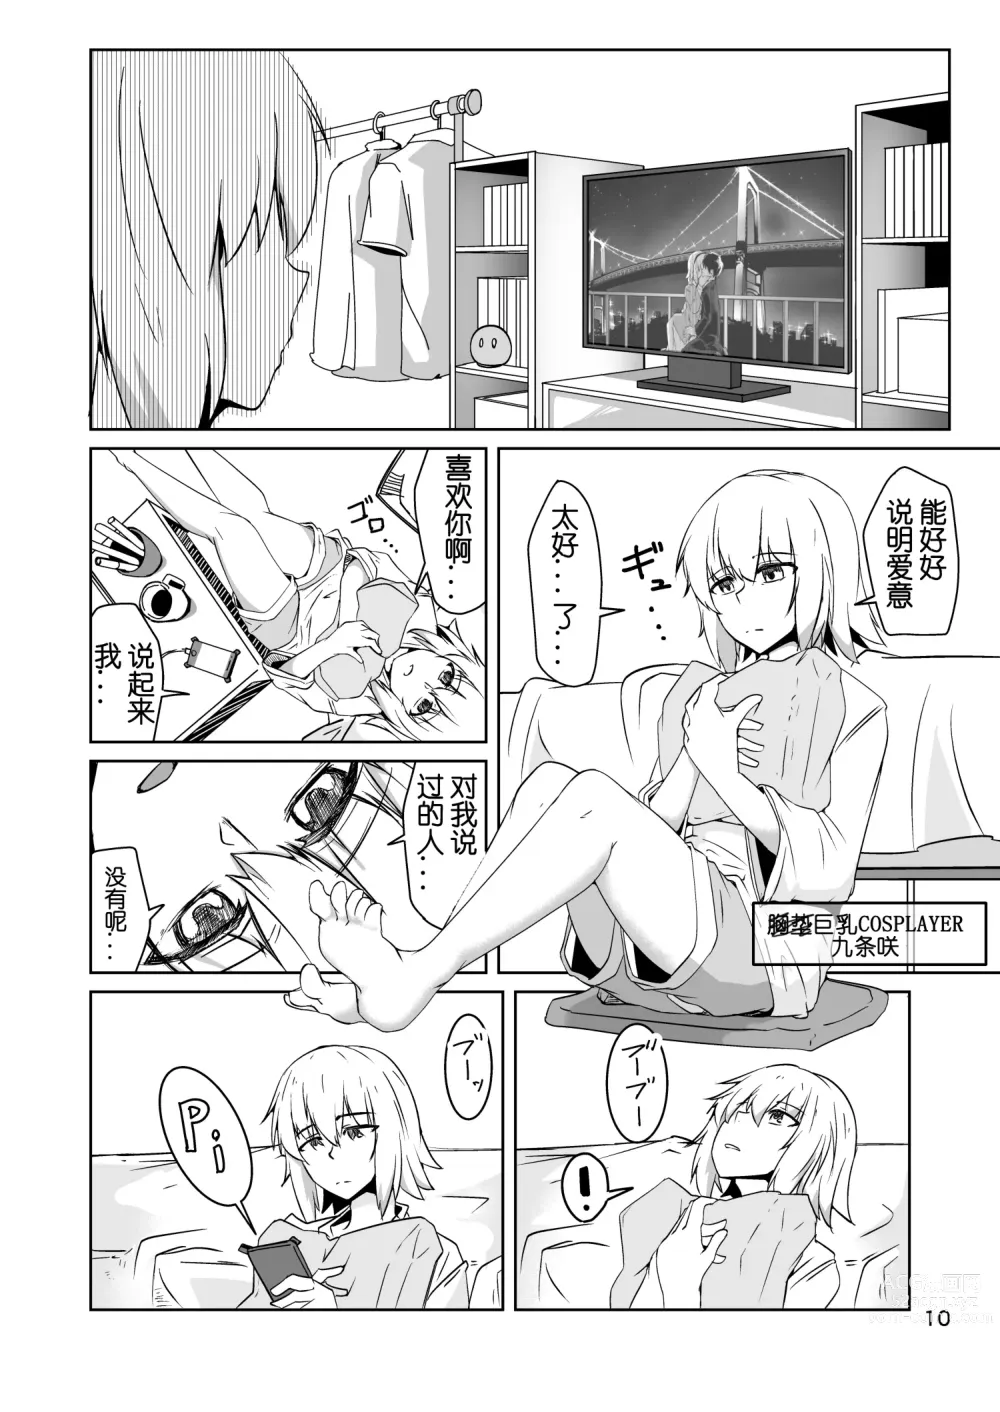 Page 9 of doujinshi Cosplay Uriko no Otomodachi Daigowa: Otomodachi Kara...